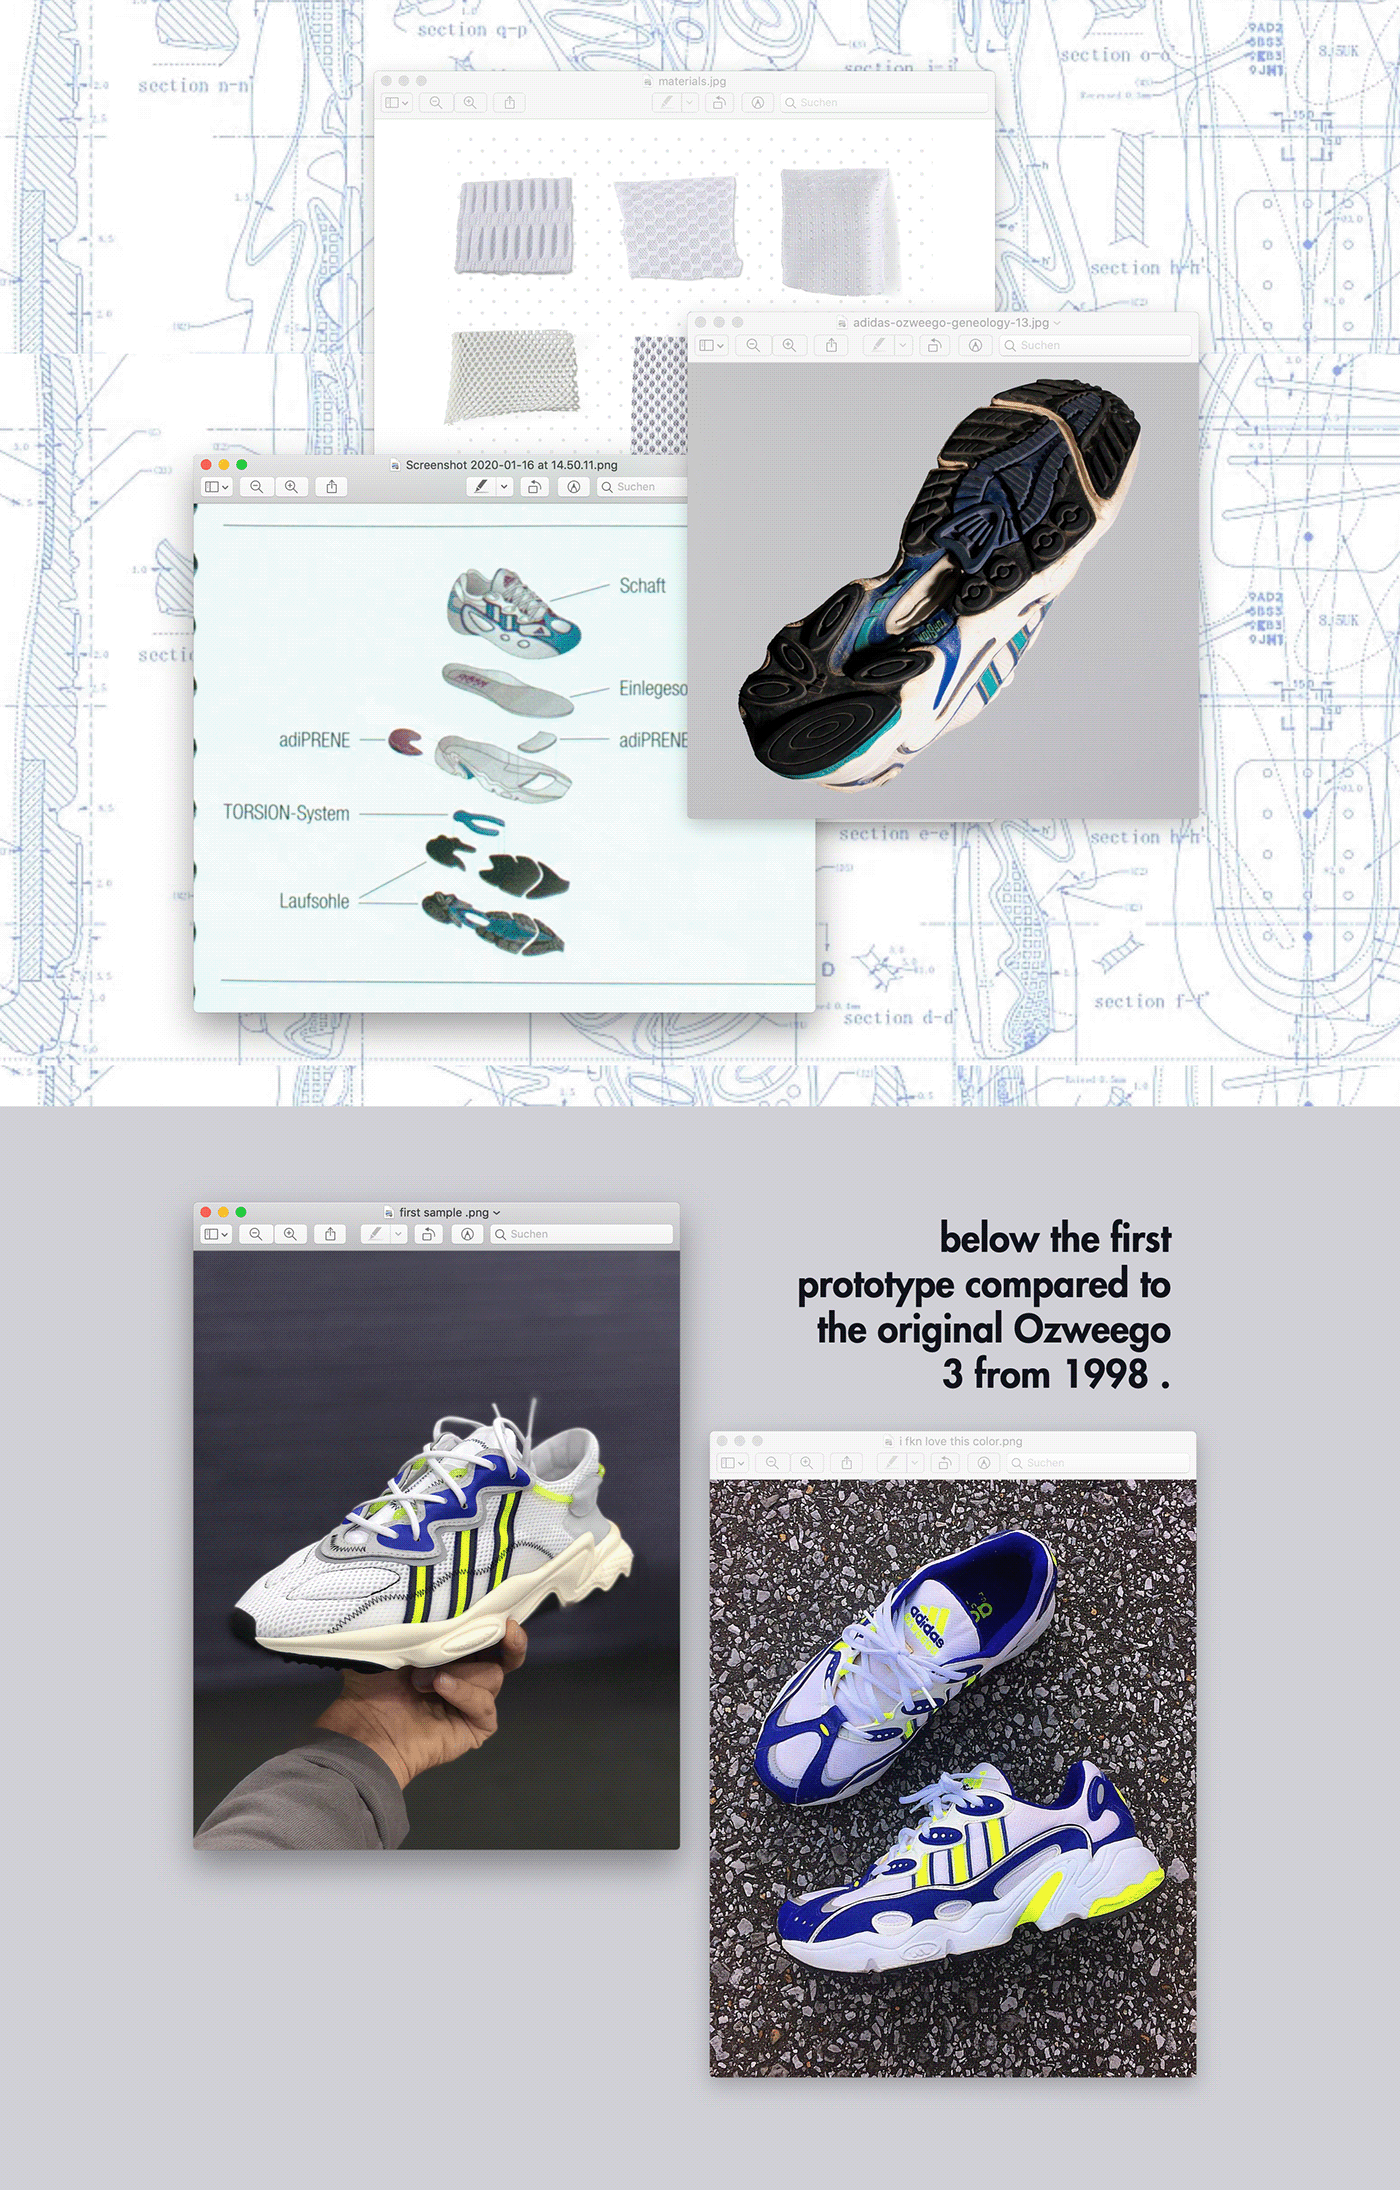 Adidas Ozweego Design Process by Konstantin Baumann